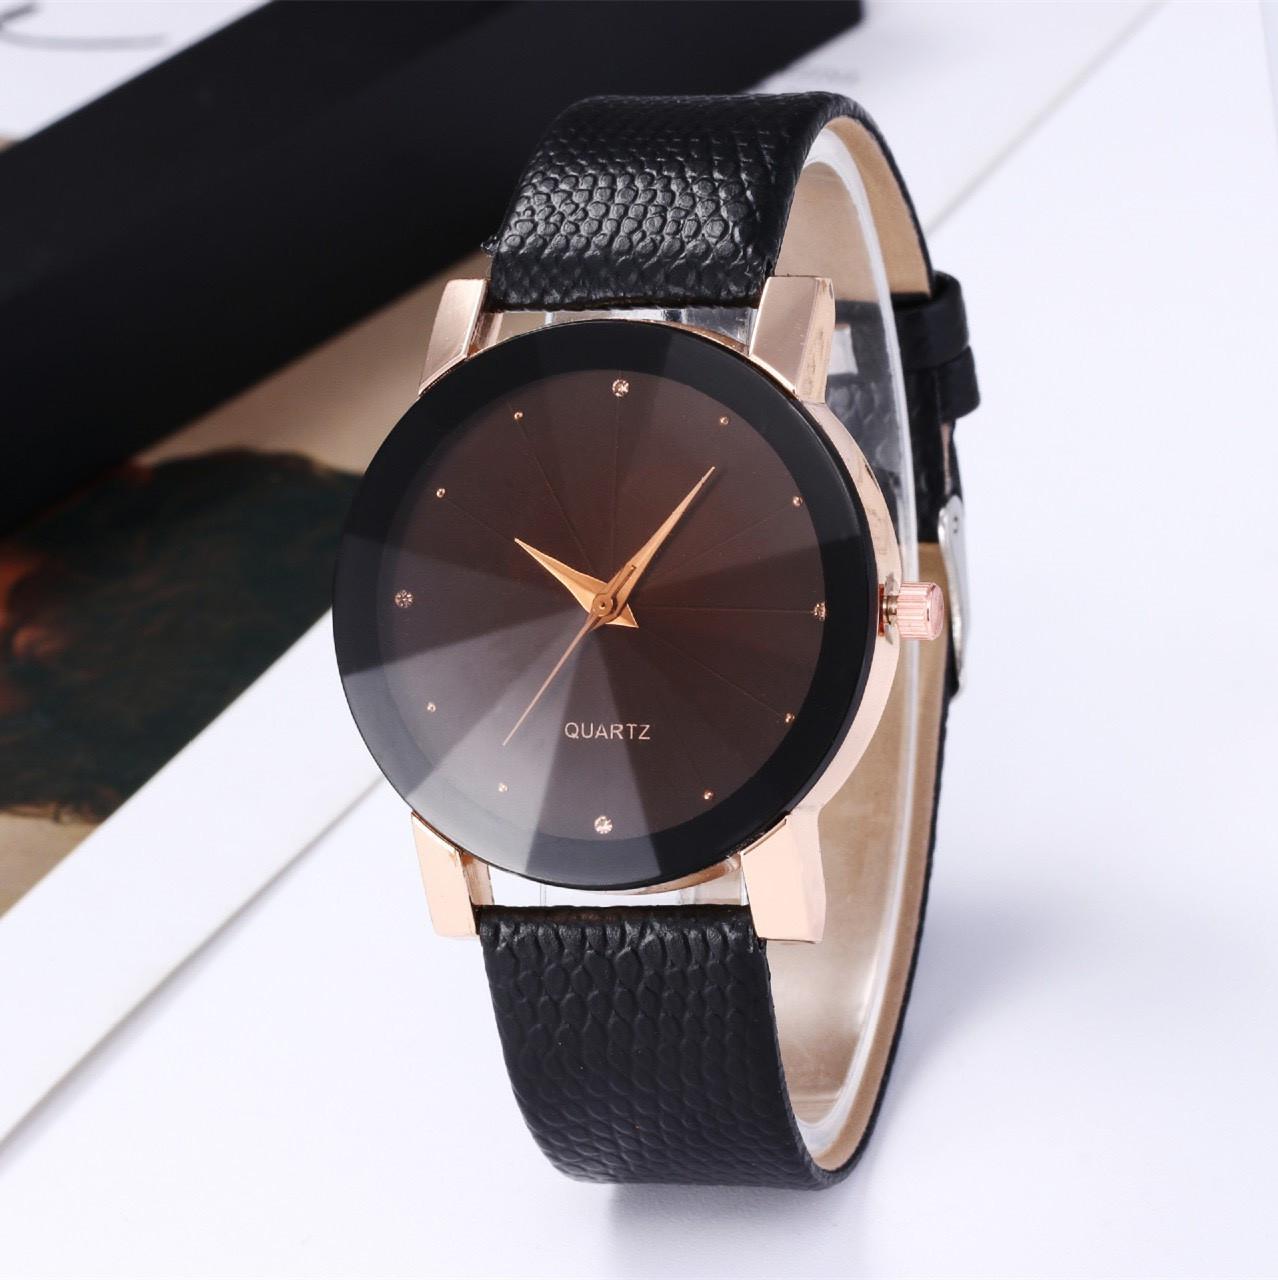 Đồng hồ đeo tay dây da phong cách hàn quốc hot hit đẹp đẽ sang trọng dành cho nam nữ DH96